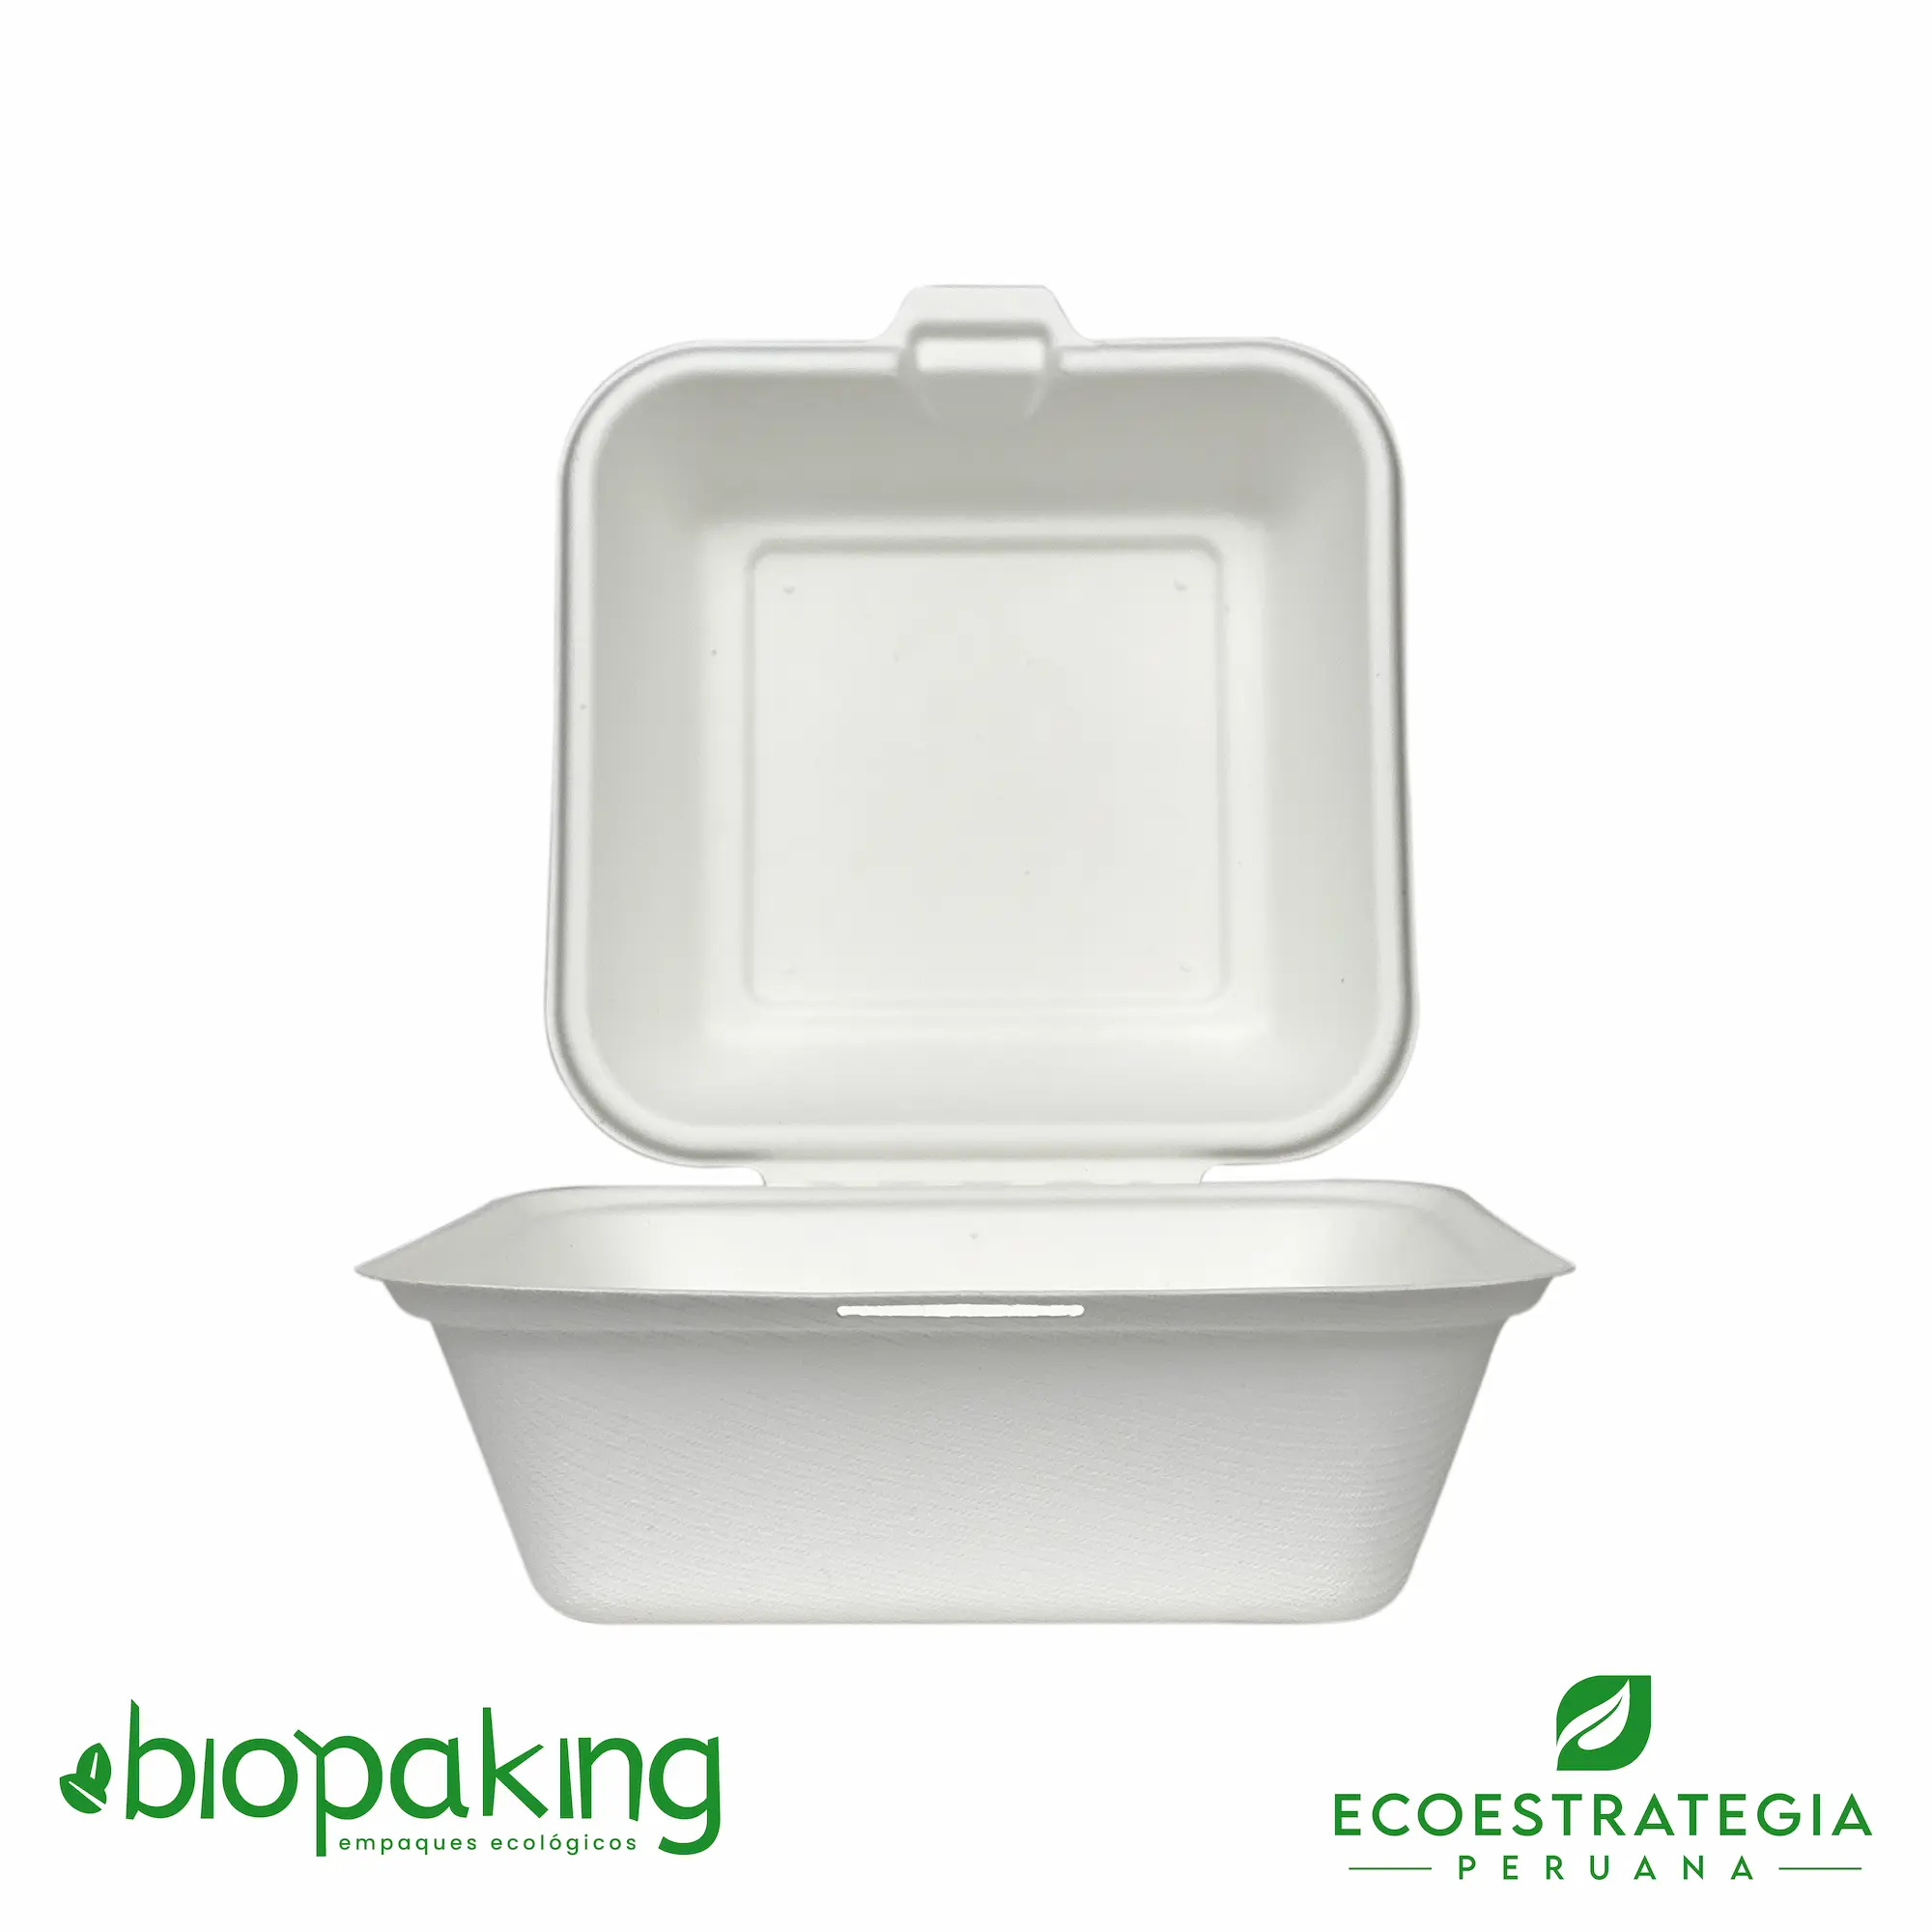 Este envase biodegradable CT4 tiene una capacidad de 500ml. Taper biodegradable a base del bagazo de fibra de caña de azúcar, empaques de gramaje ideal para comidas frías y calientes